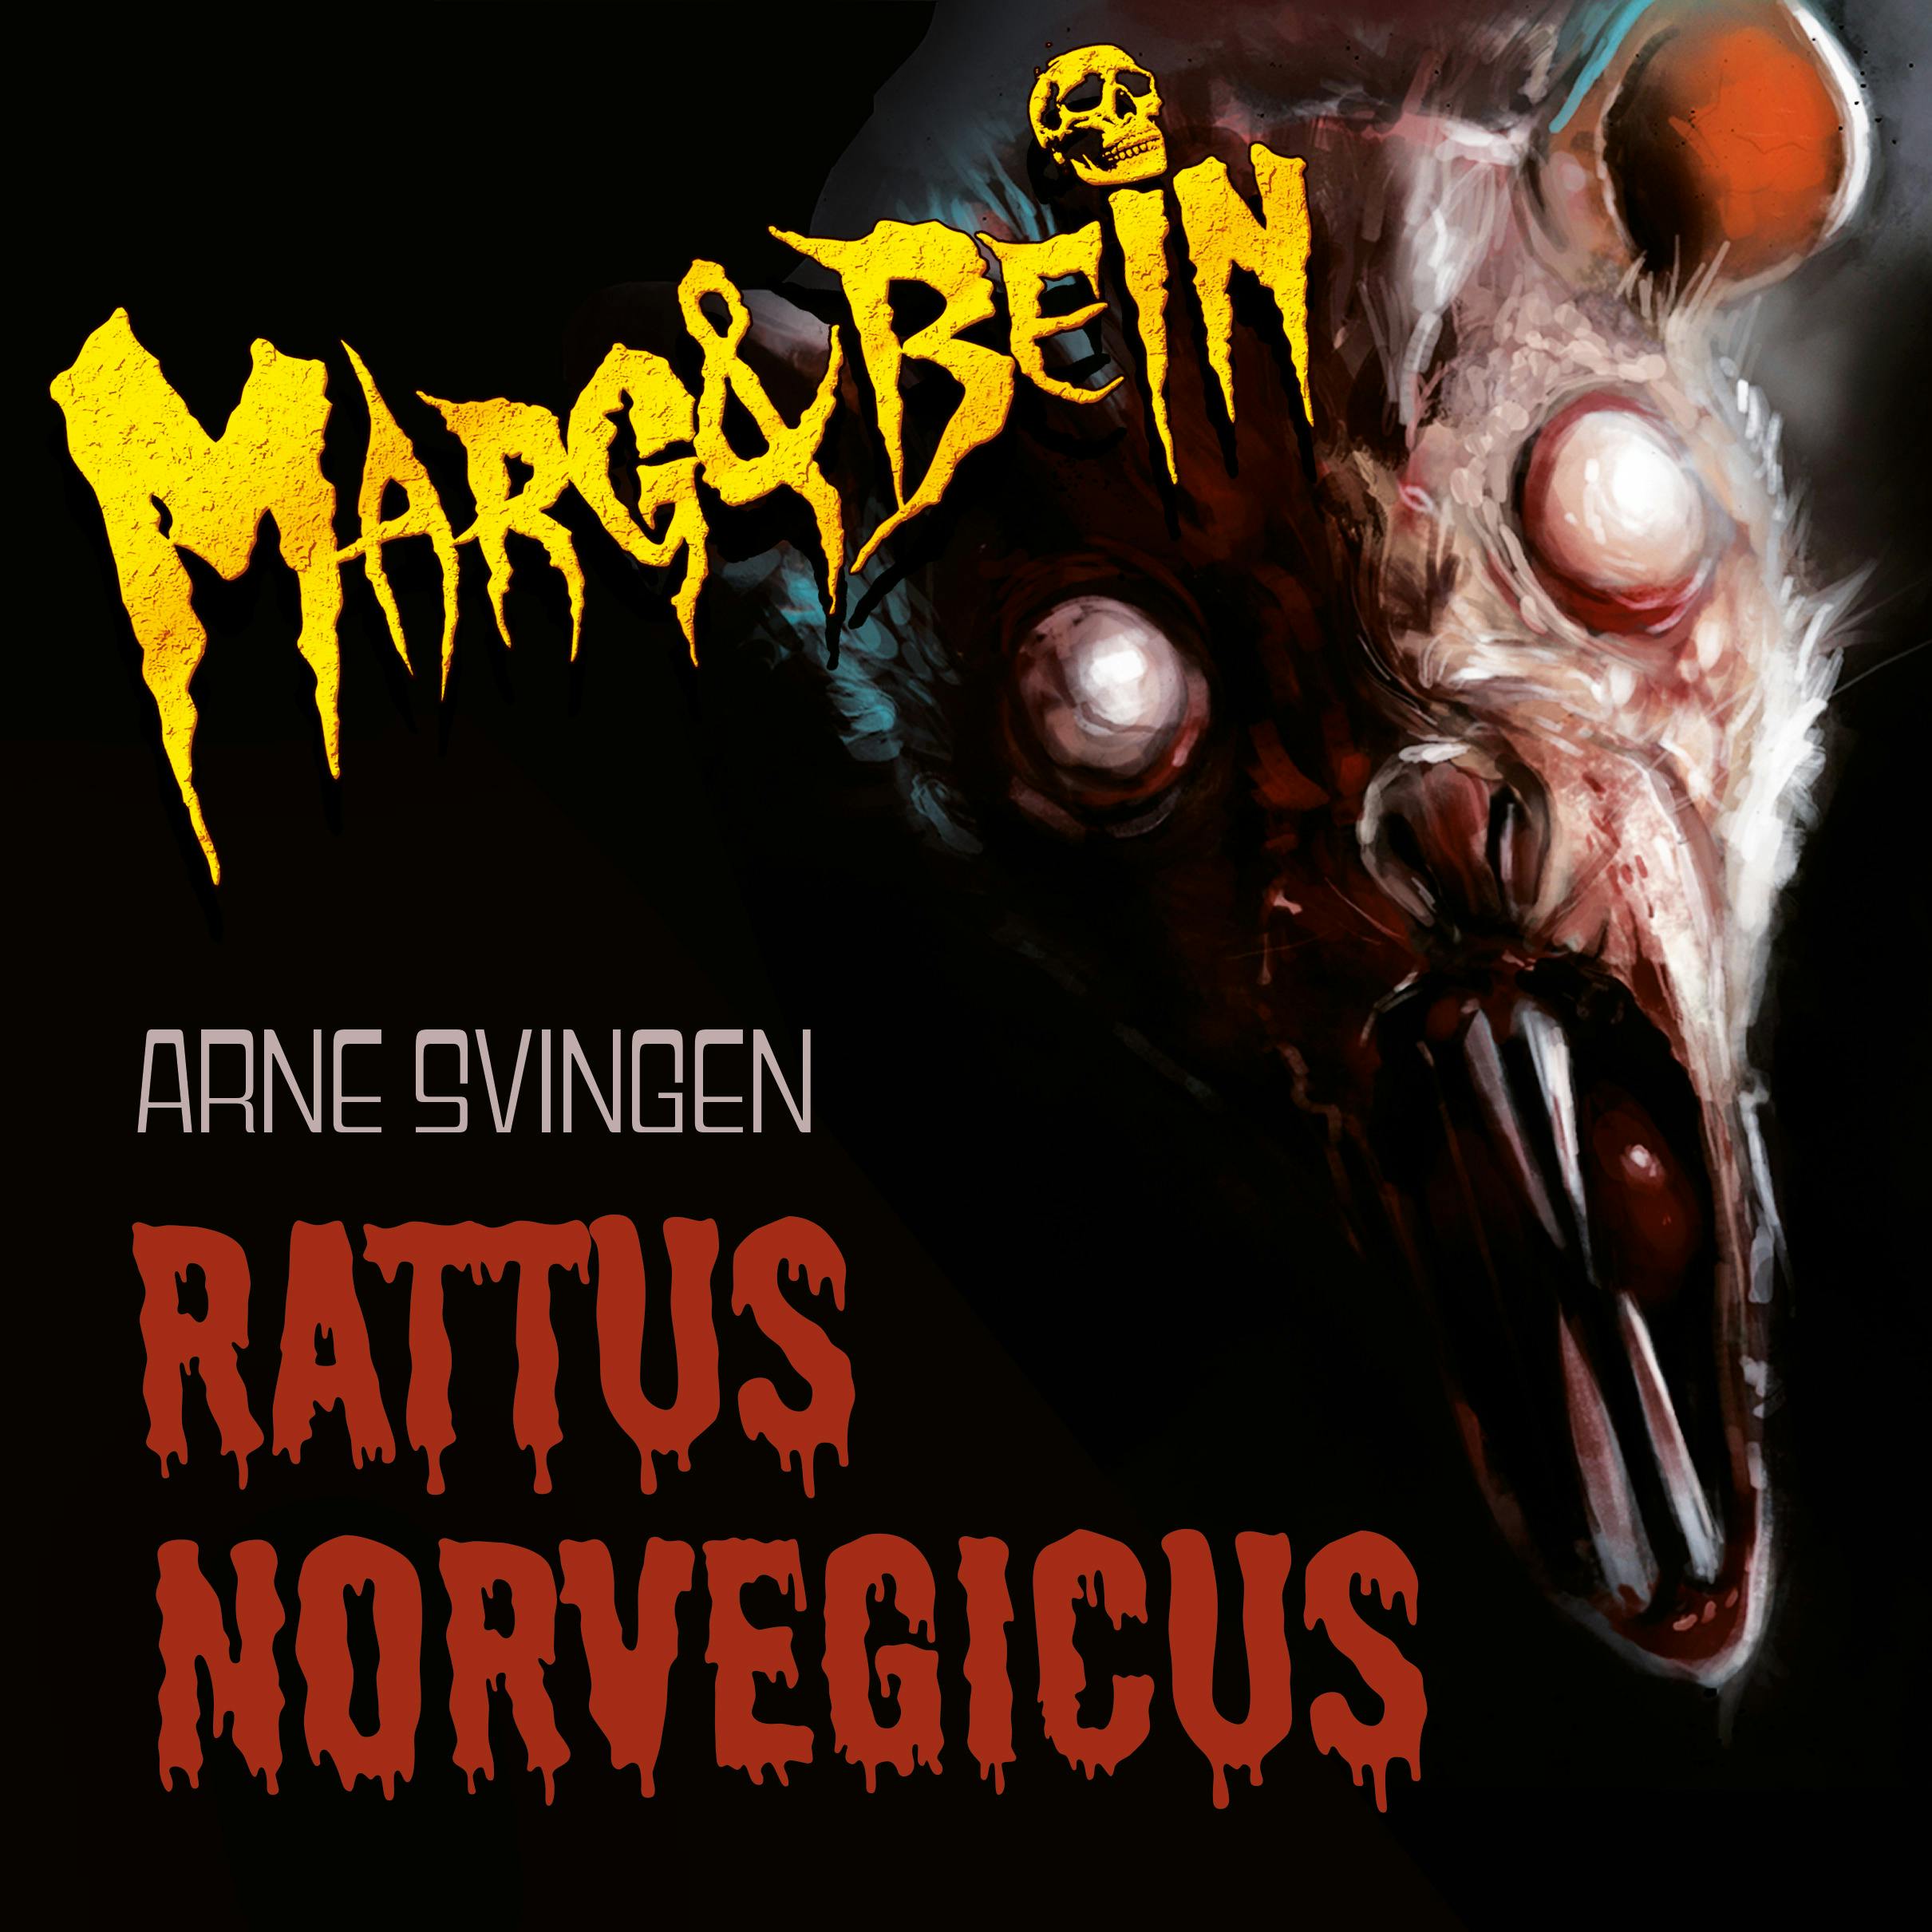 Rattus norvegicus - Arne Svingen